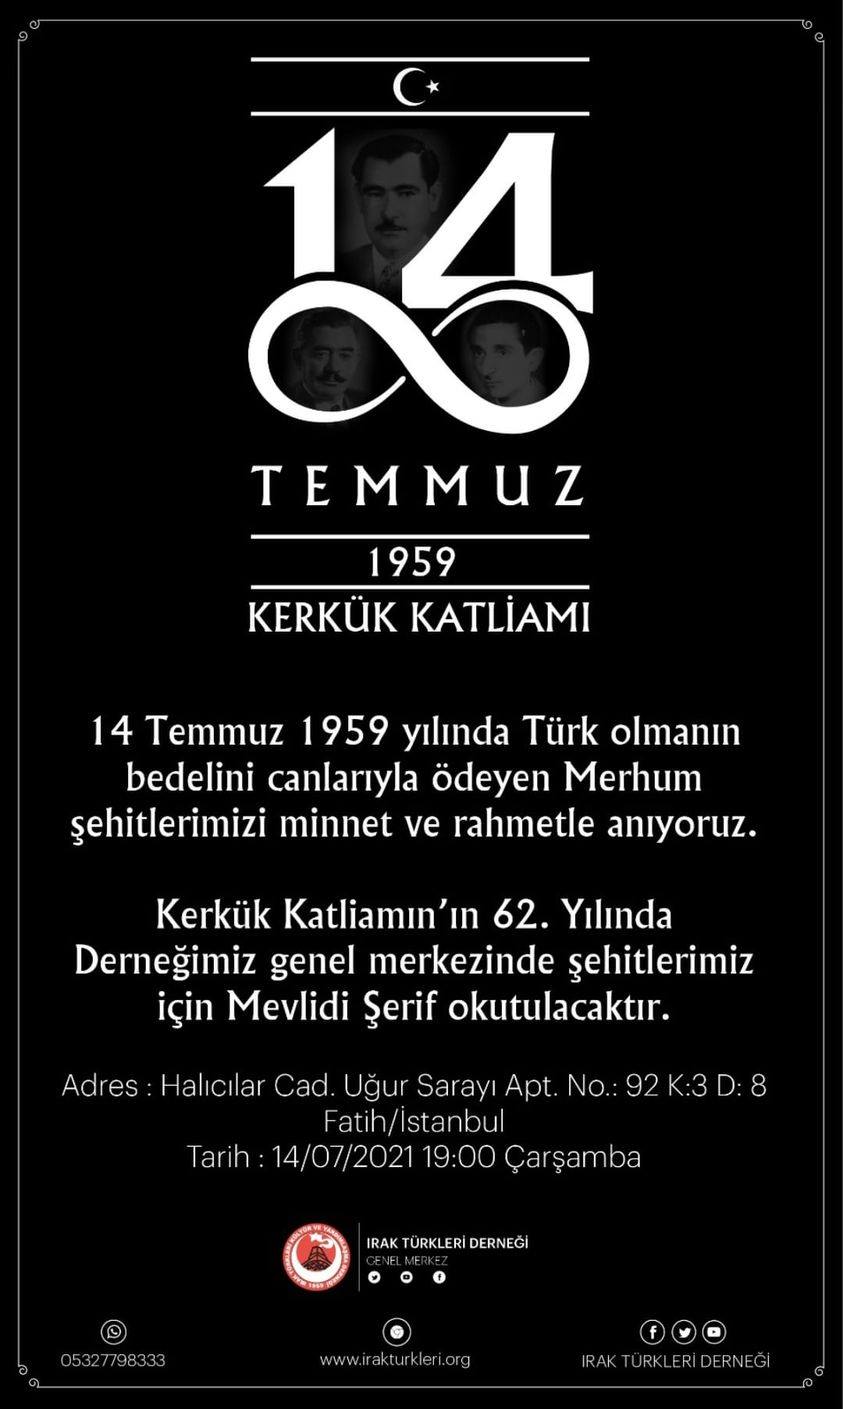 14 Temmuz 1959 Kerkük Katliamı ve Türkmenlerin Bugünü